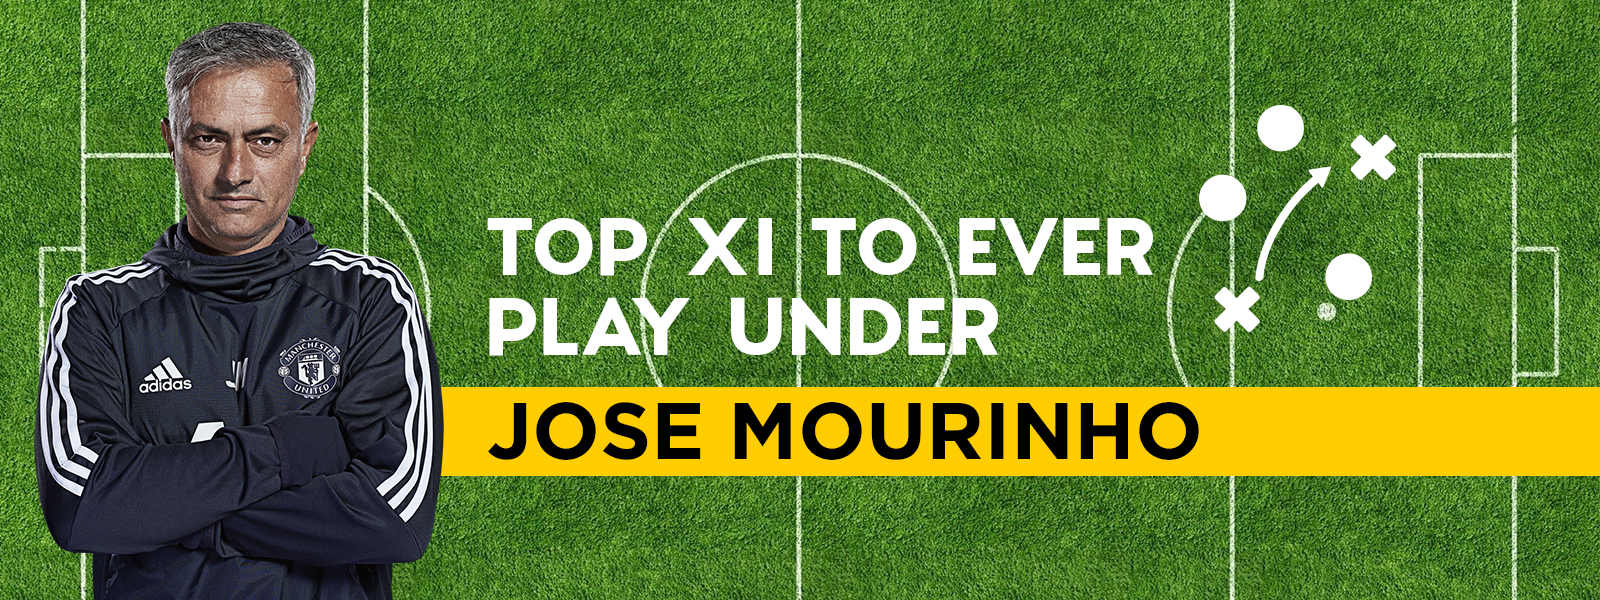 Top XI to ever play under Jose Mourinho